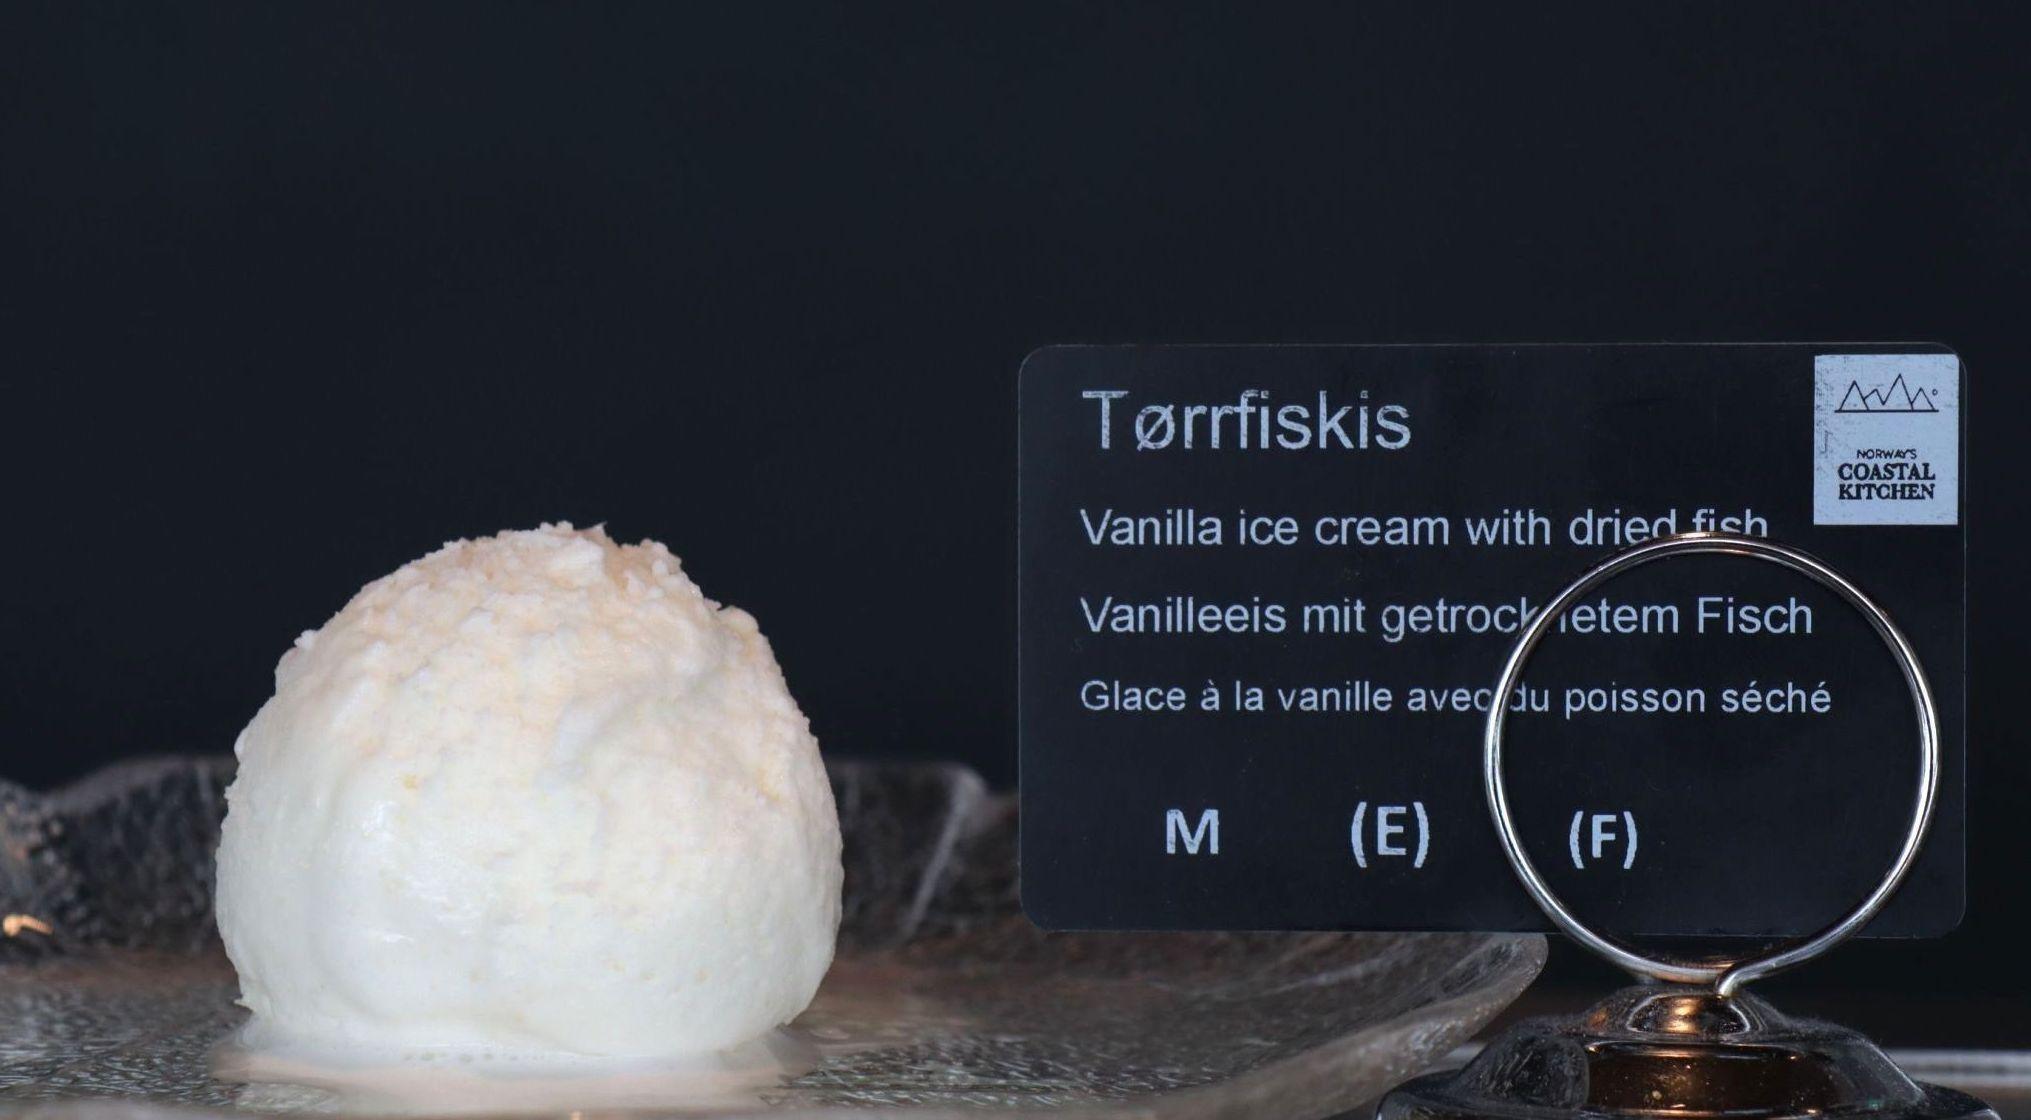 ORIGINALT: Har du alltid drømt om en iskremkombinasjon av vanilje og tørrfisk, kan du prøve det om bord på Hurtigruten. Foto: Rune Hornnes/Hurtigruten